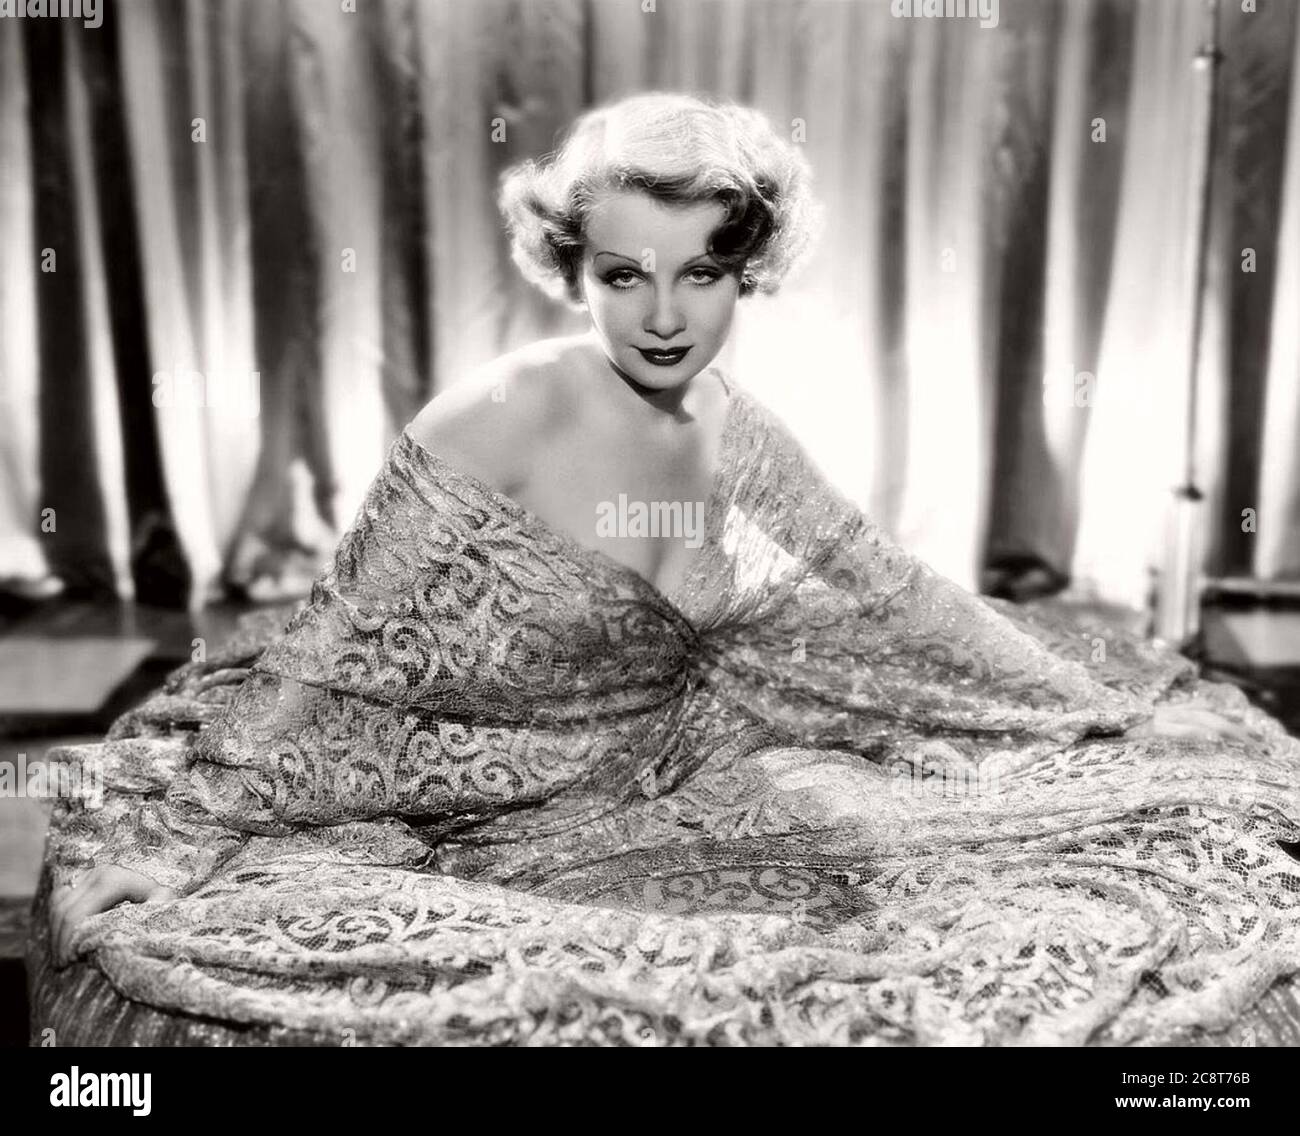 vintage-black-white-portrait-hollywood-movie-actress-1930s-Sari-Maritza-2 Stock Photo